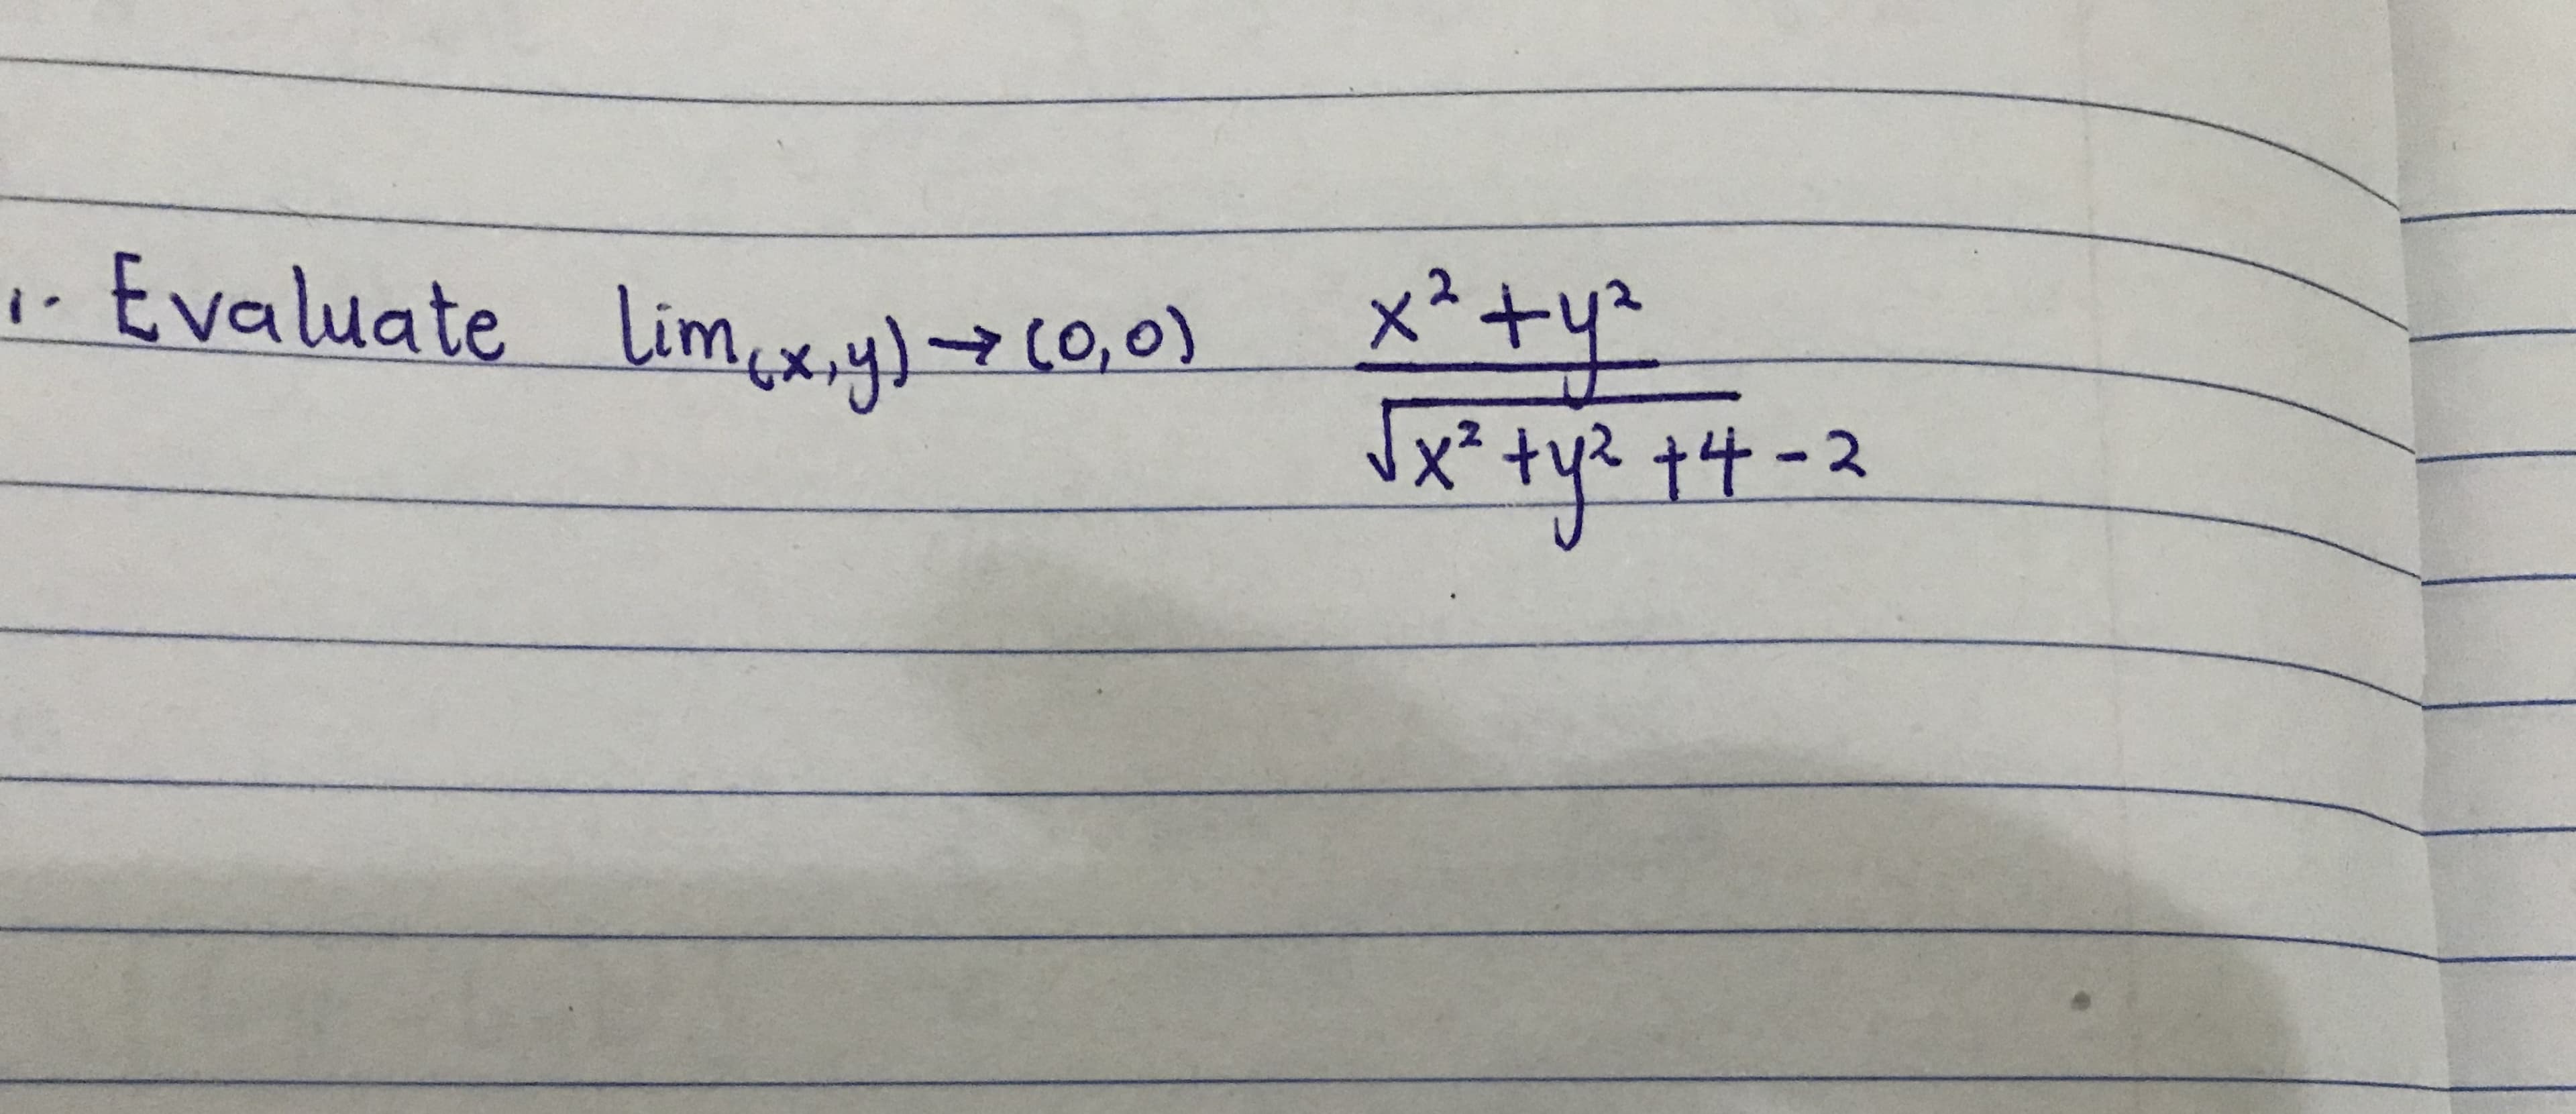 メ*+リ
tyz
Evaluate limxy)(0,0)
x²+
x* +y? 十4-2
